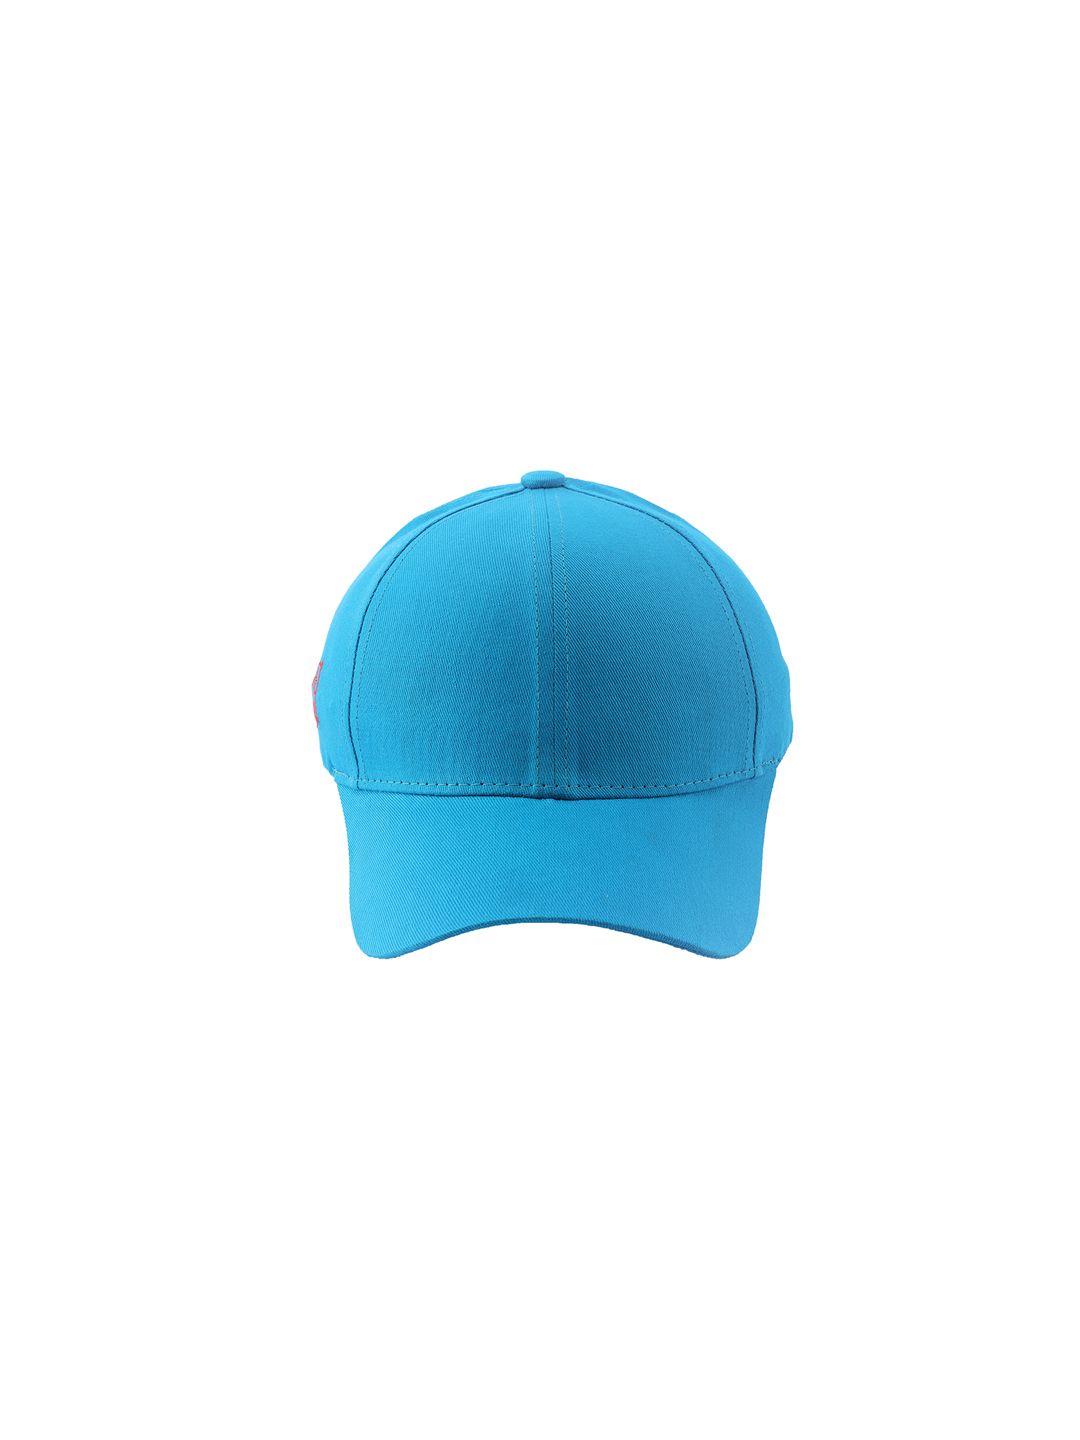 Cap Shap Unisex Turquoise Blue Solid Baseball Cap Price in India